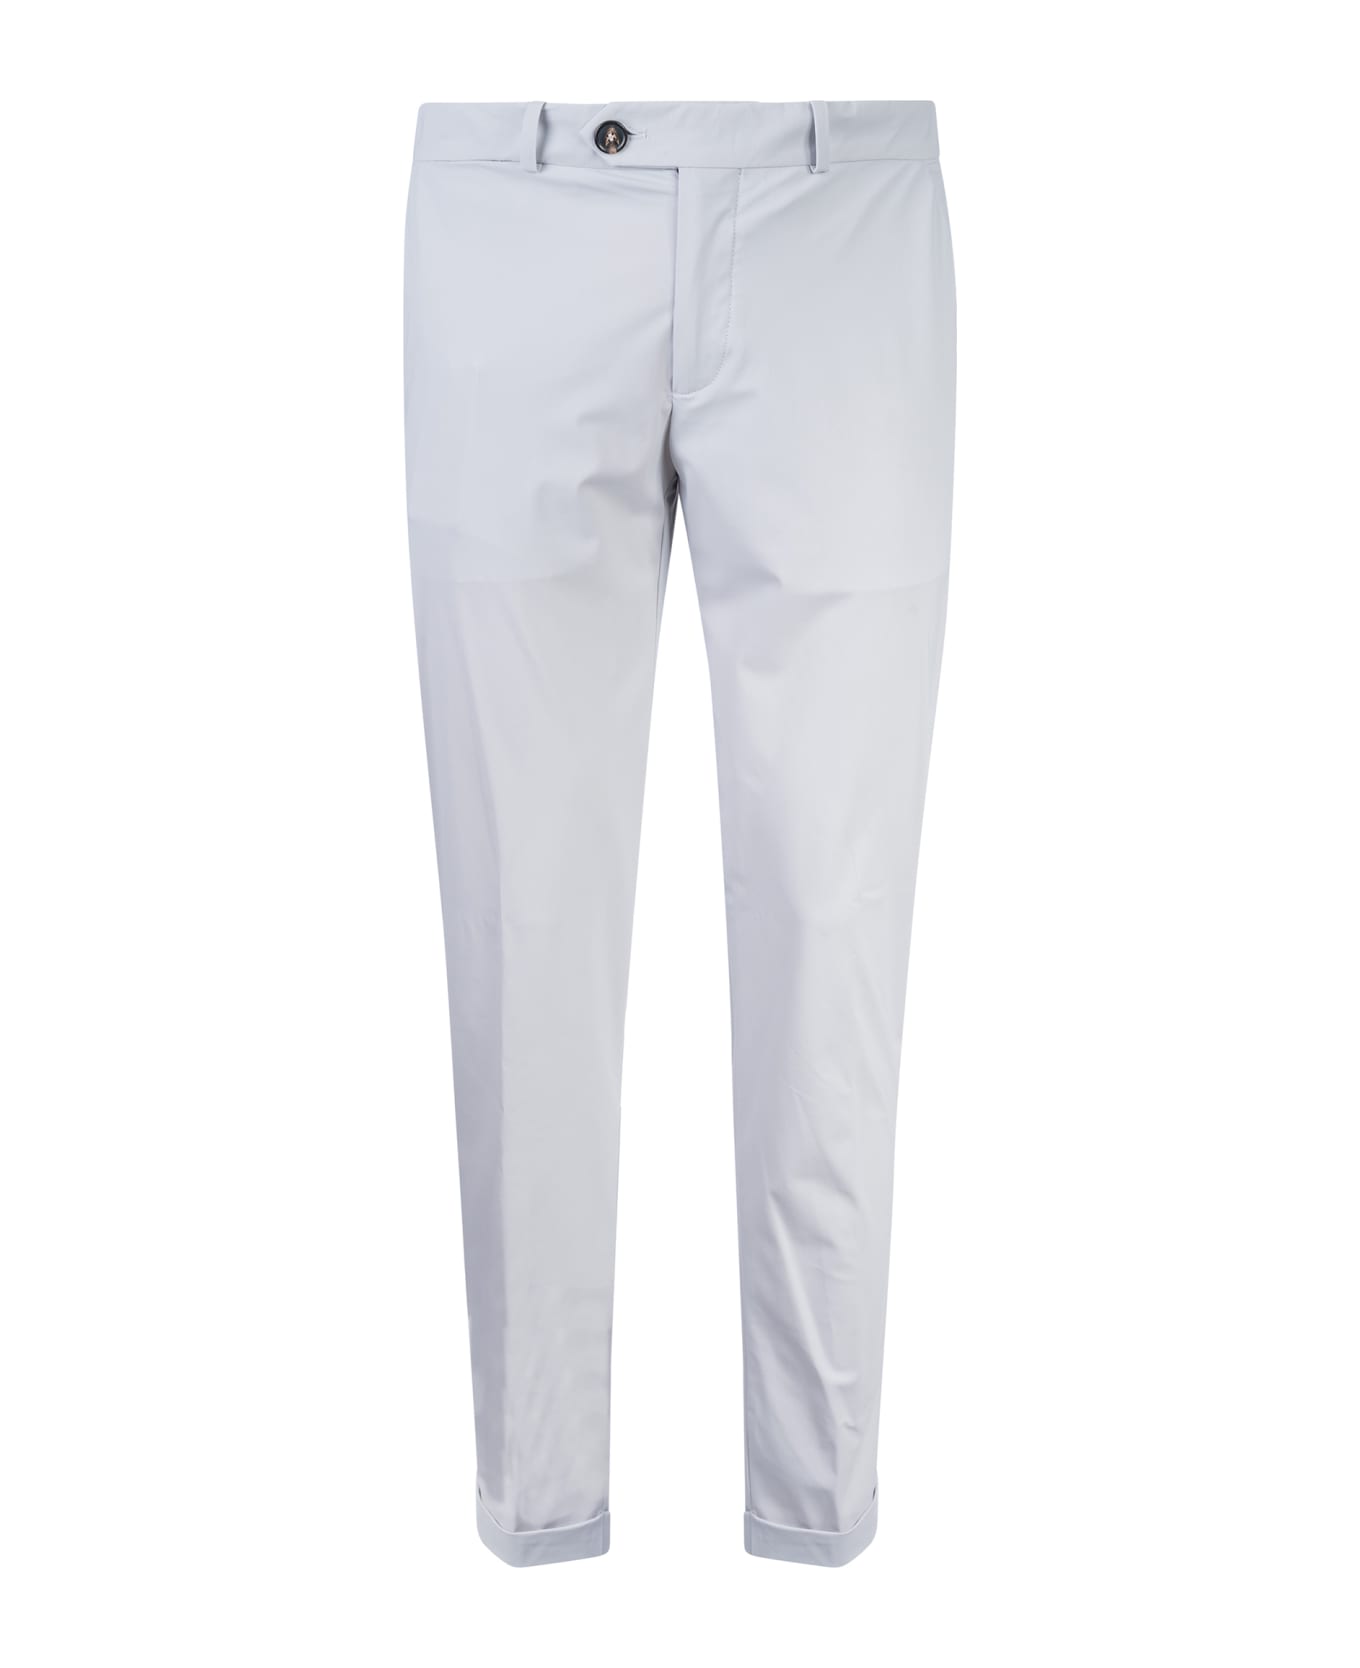 RRD - Roberto Ricci Design Revo Chino Trousers - Grey